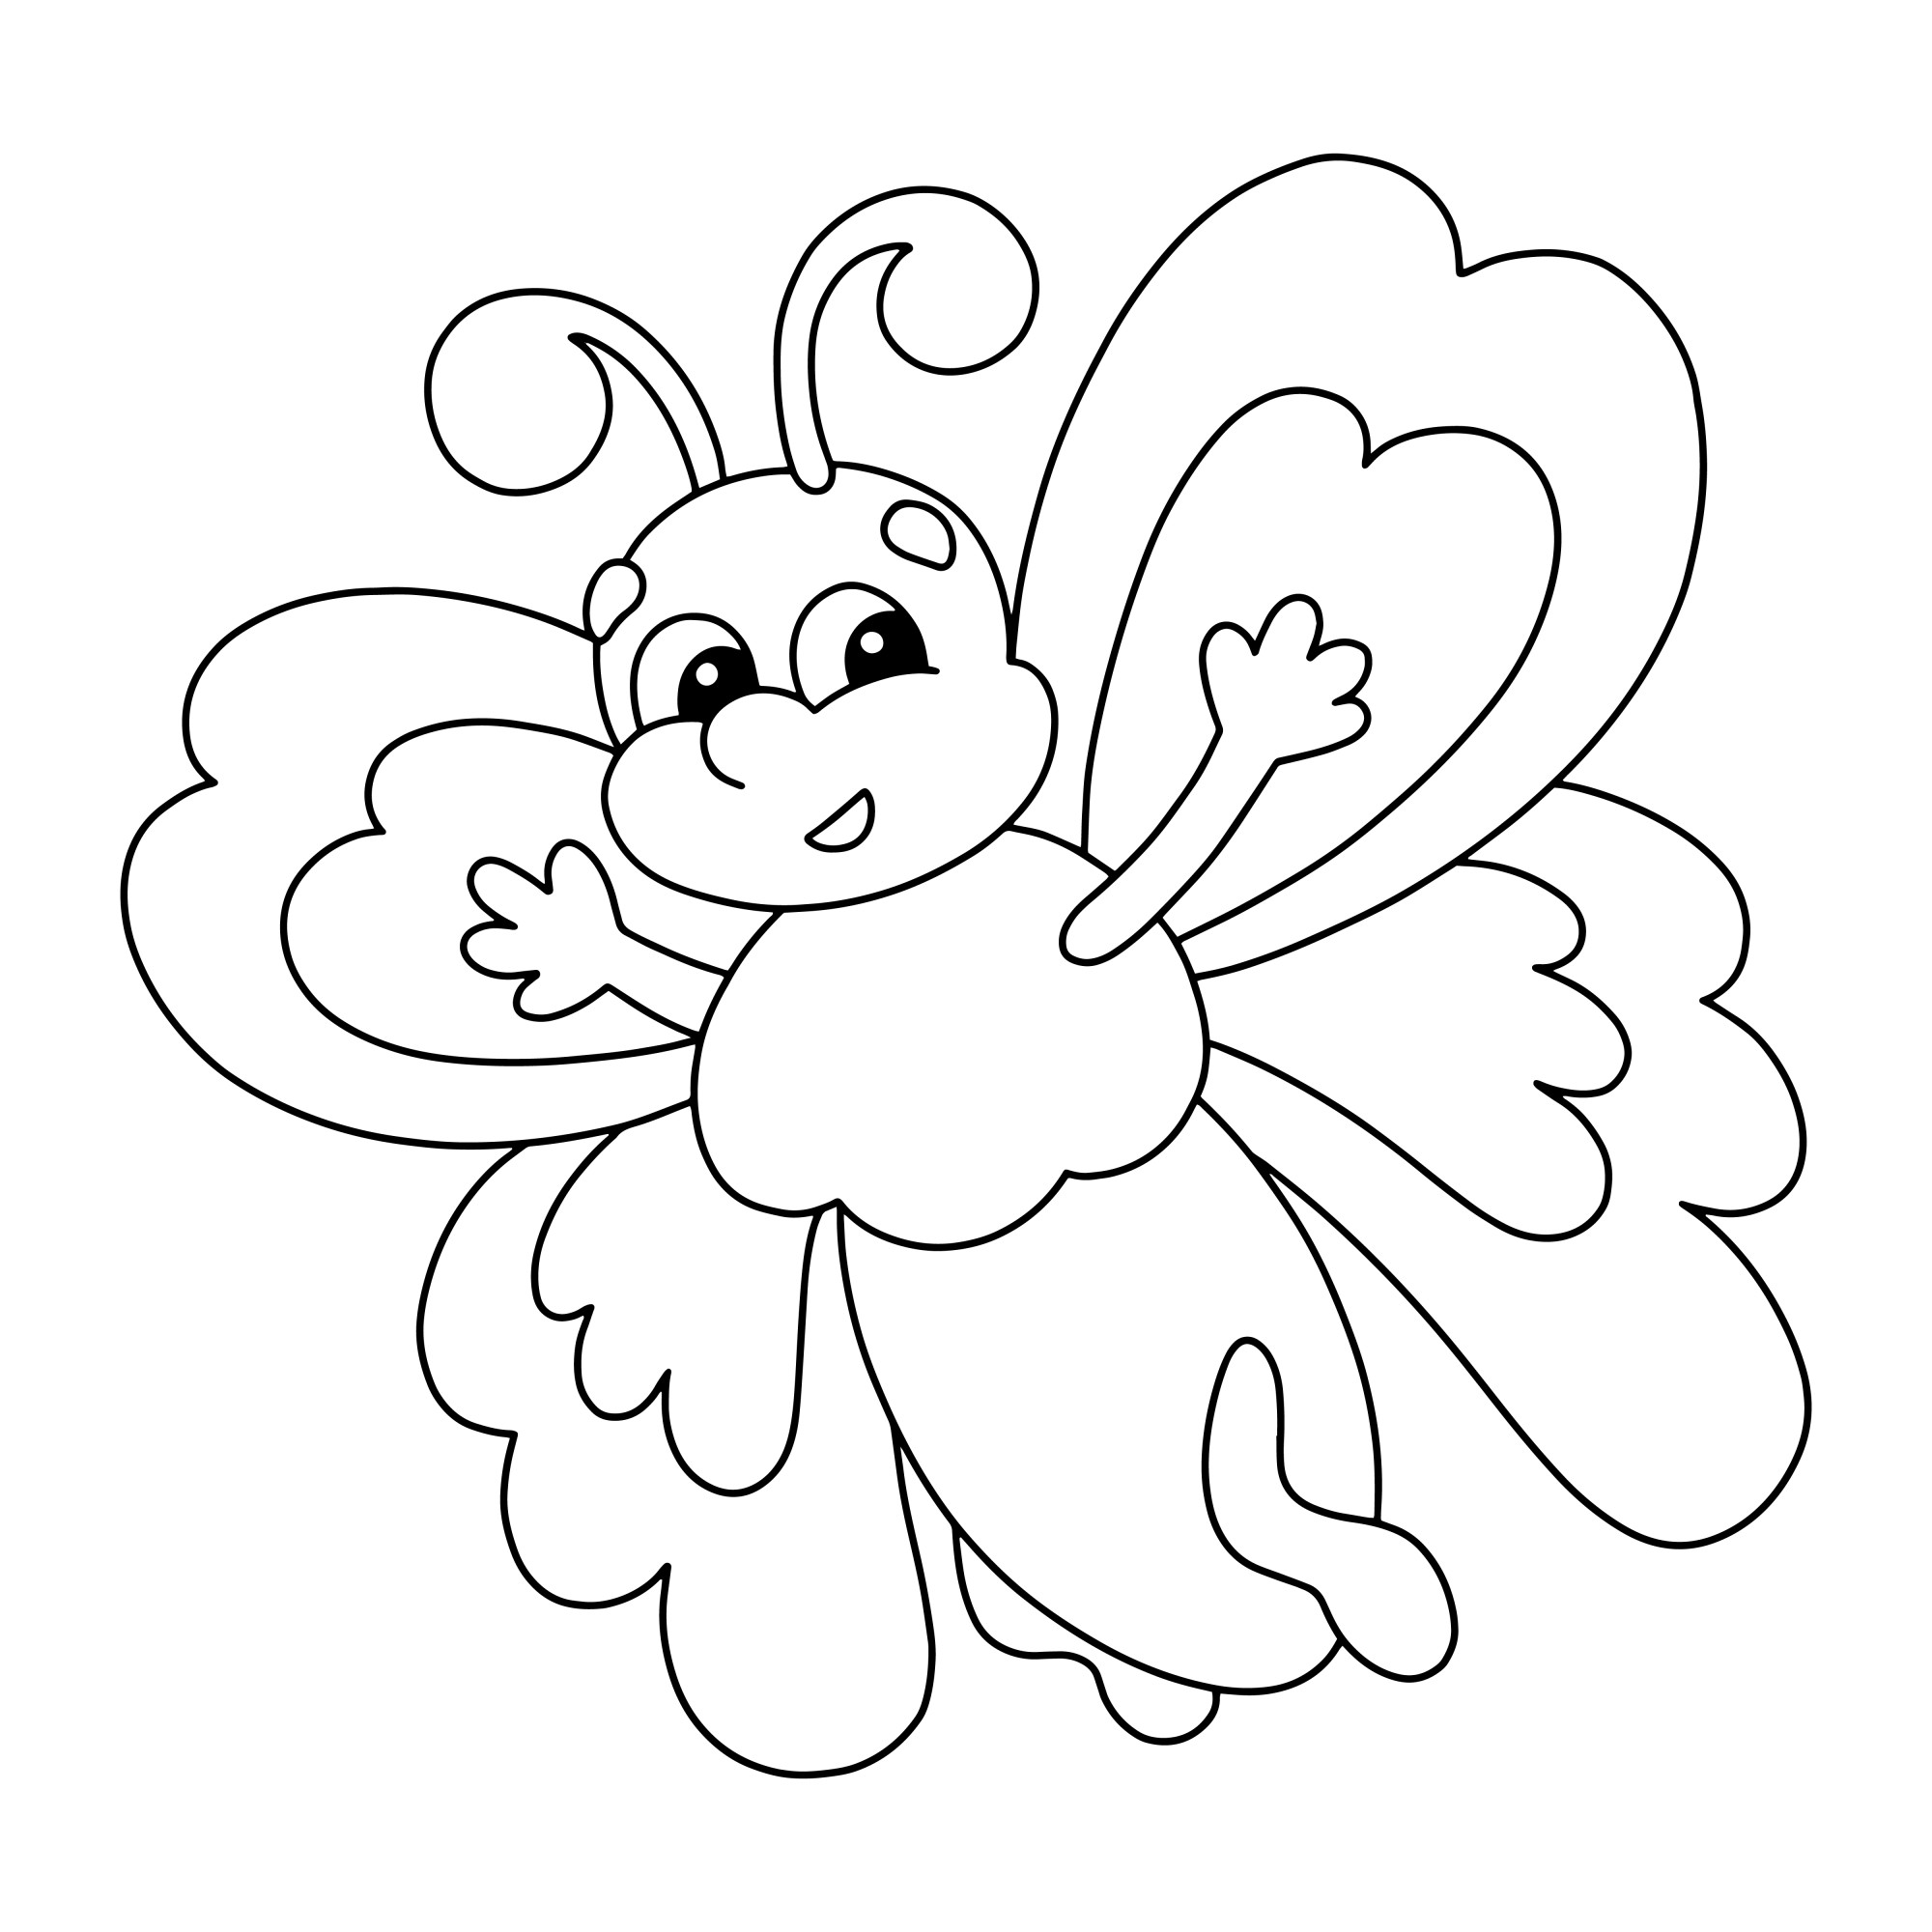 Раскраска для детей: мультяшная воздушная бабочка